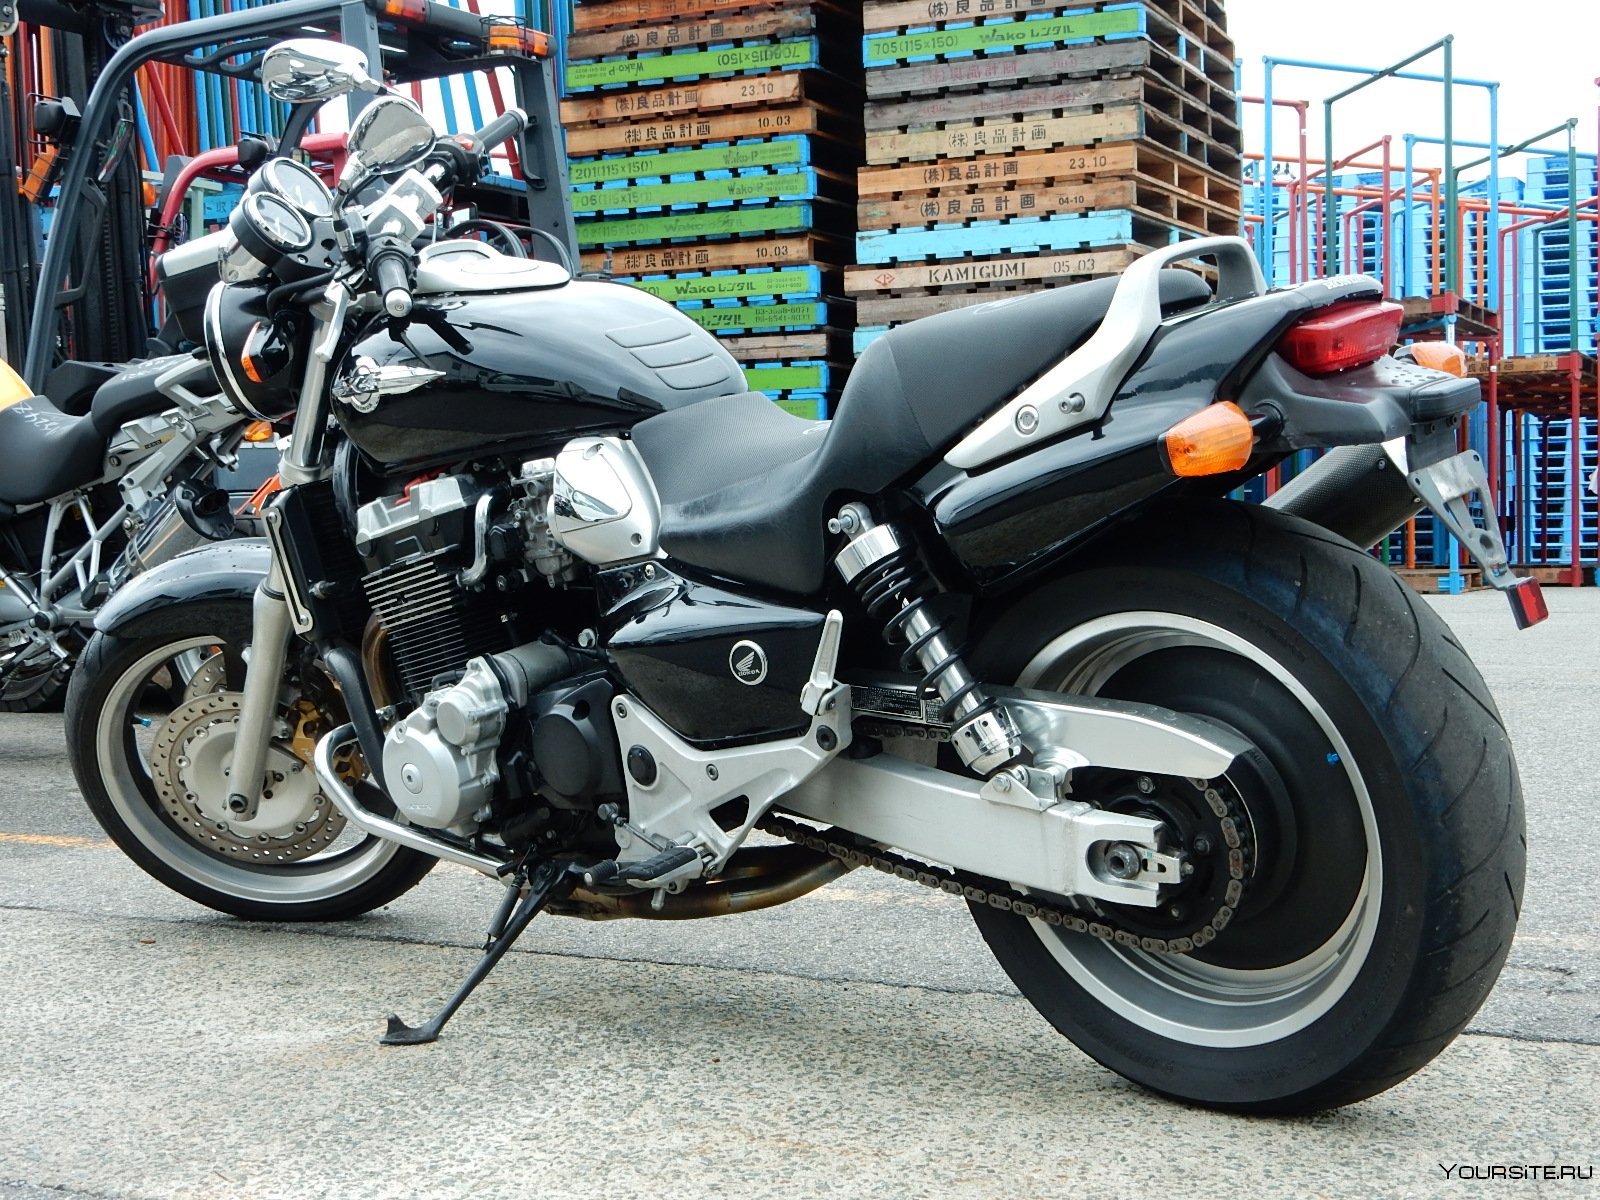 Мотоцикл honda x4 — отличный байк для быта и отдыха